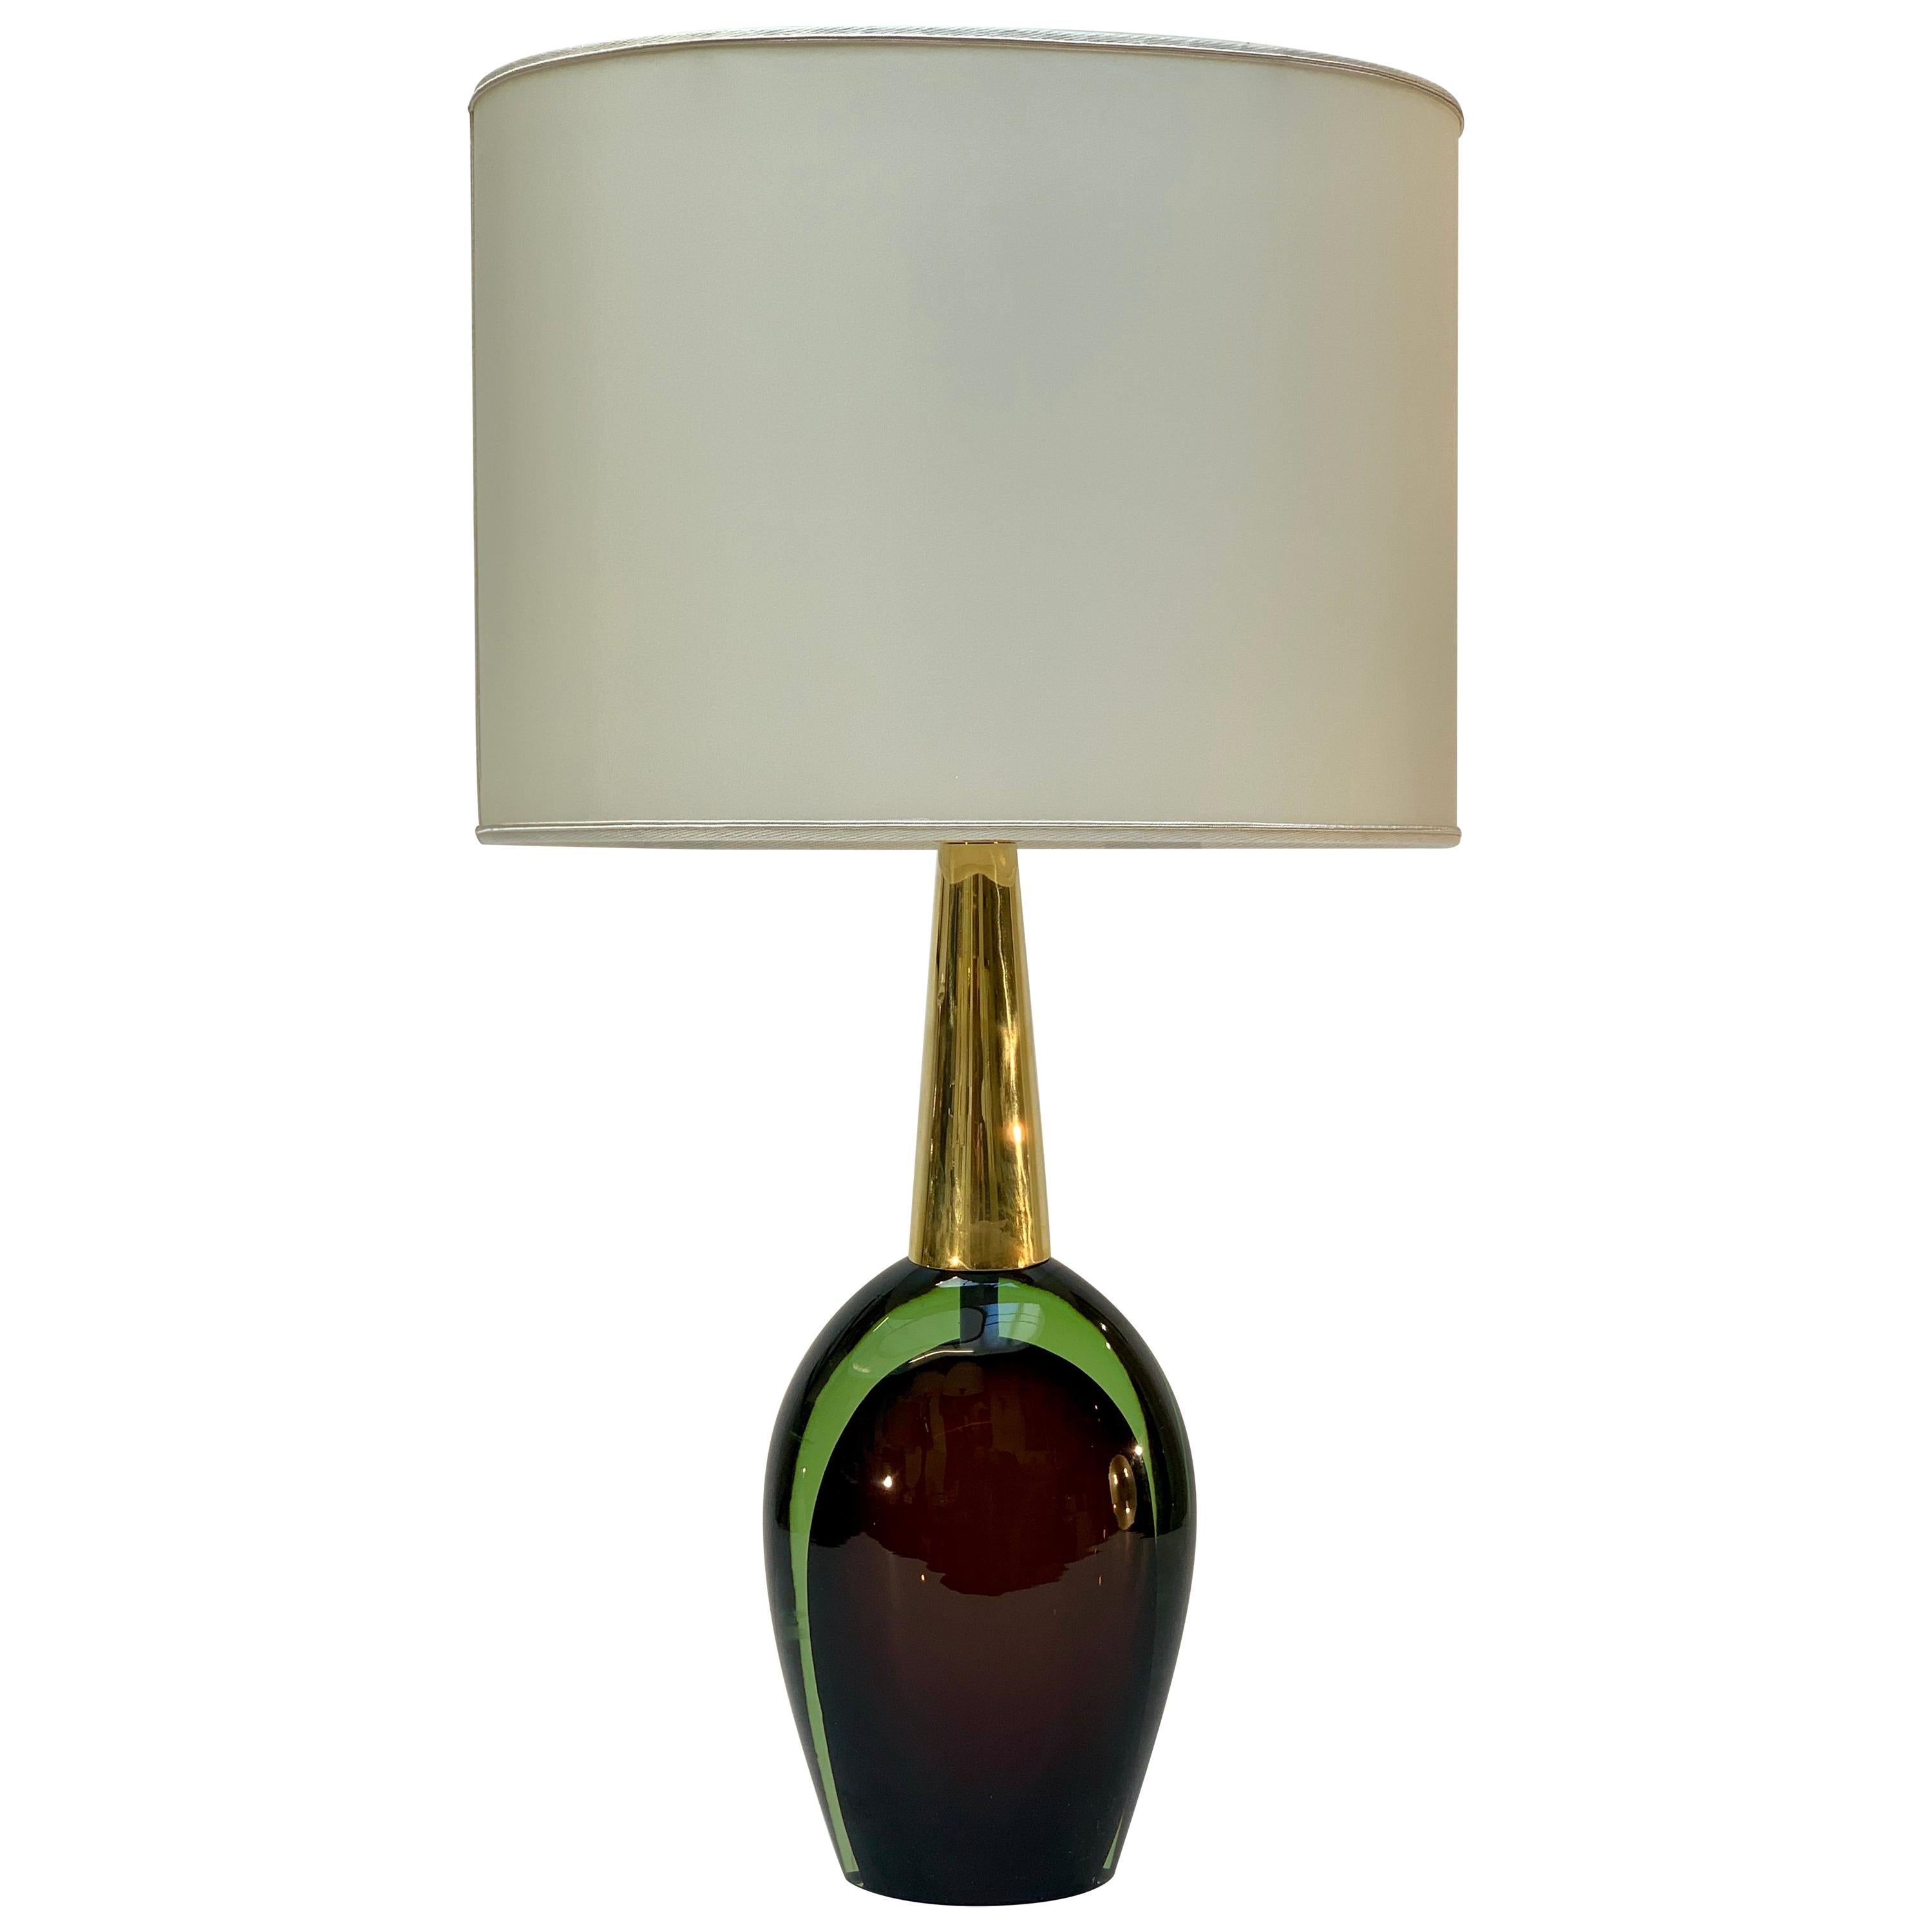 Seguso Vetri d'Arte "Sommerso" Signed Murano Glass Midcentury Table Lamp